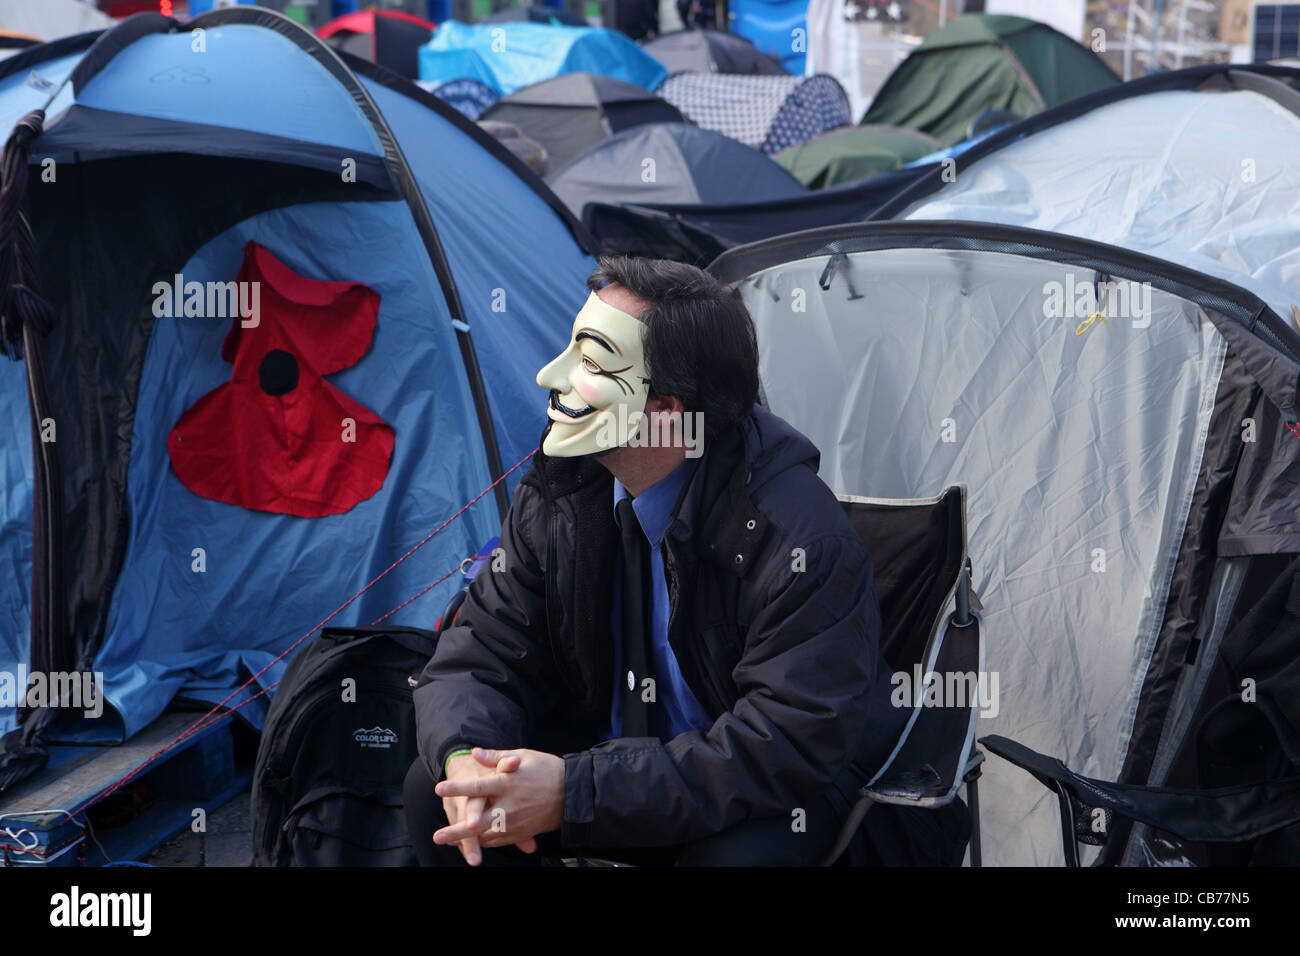 Campement Occupy London, à l'extérieur de la Cathédrale St Paul, London, UK. Homme , partie de mouvement anonyme portant le masque de Guy Fawkes Banque D'Images